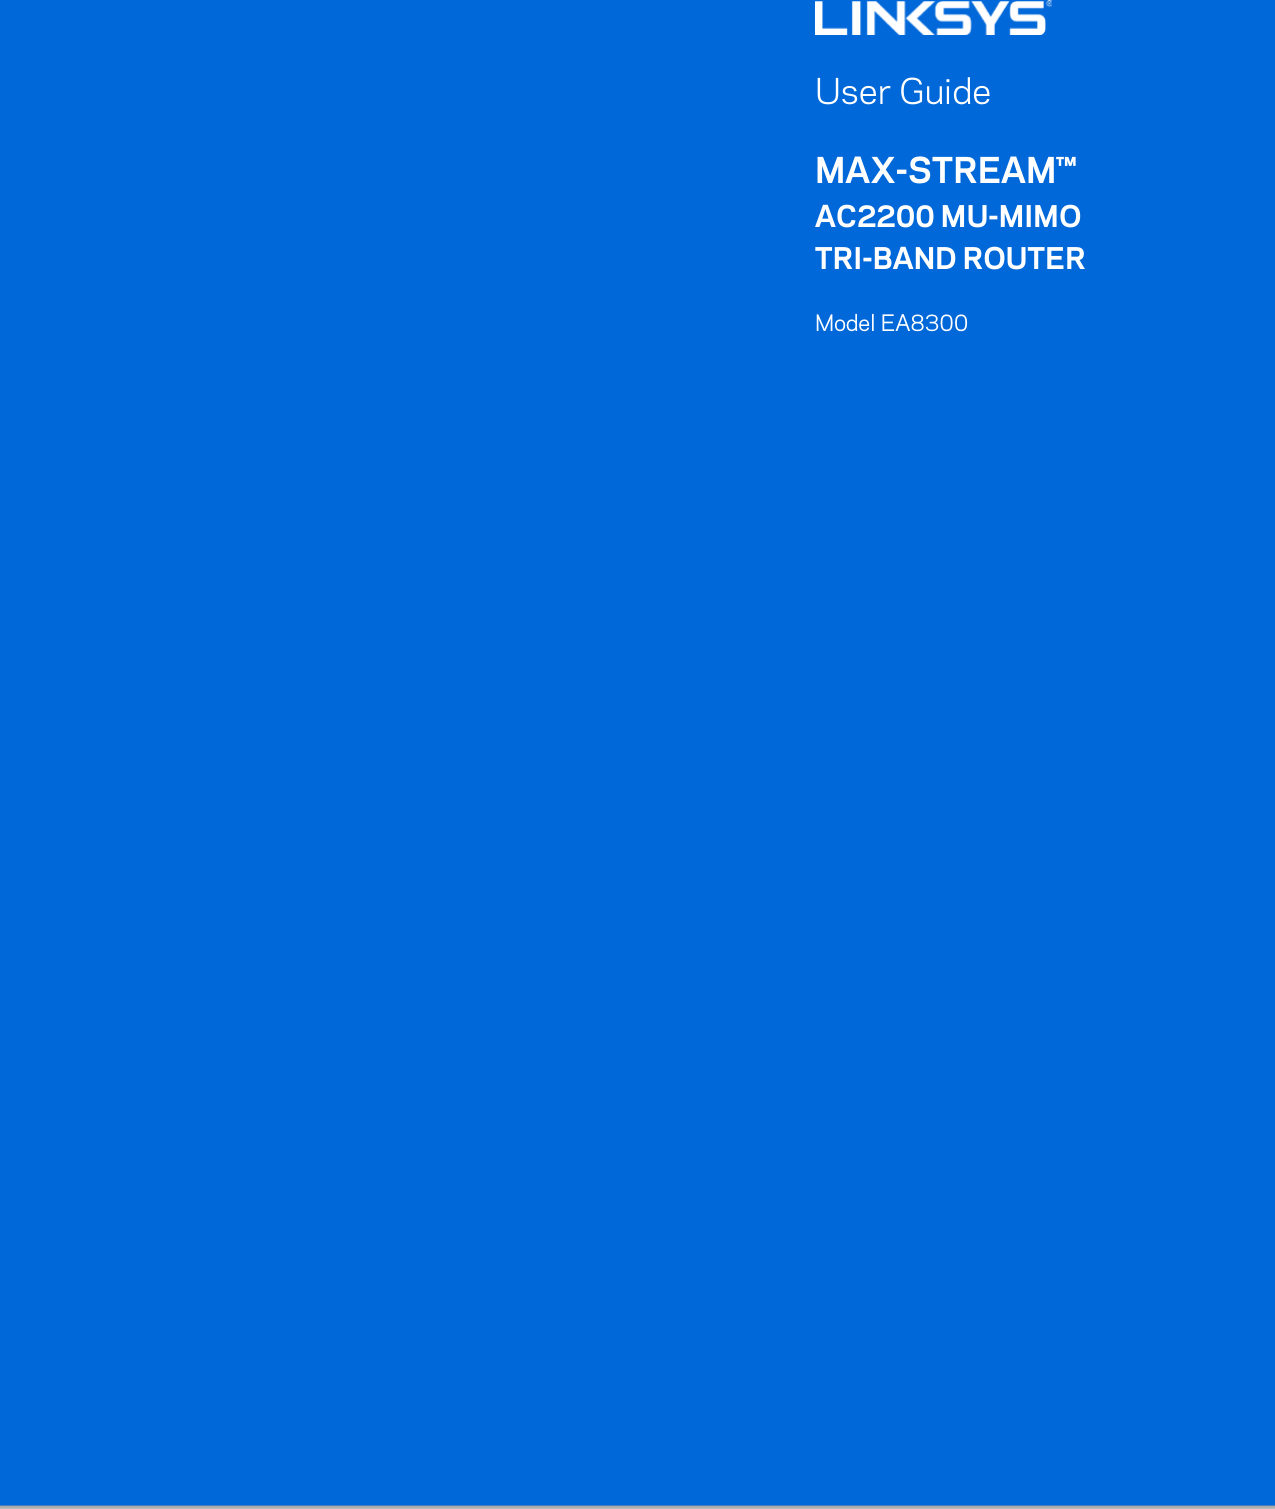     User Guide MAX-STREAM™ AC2200 MU-MIMO TRI-BAND ROUTER Model EA8300 